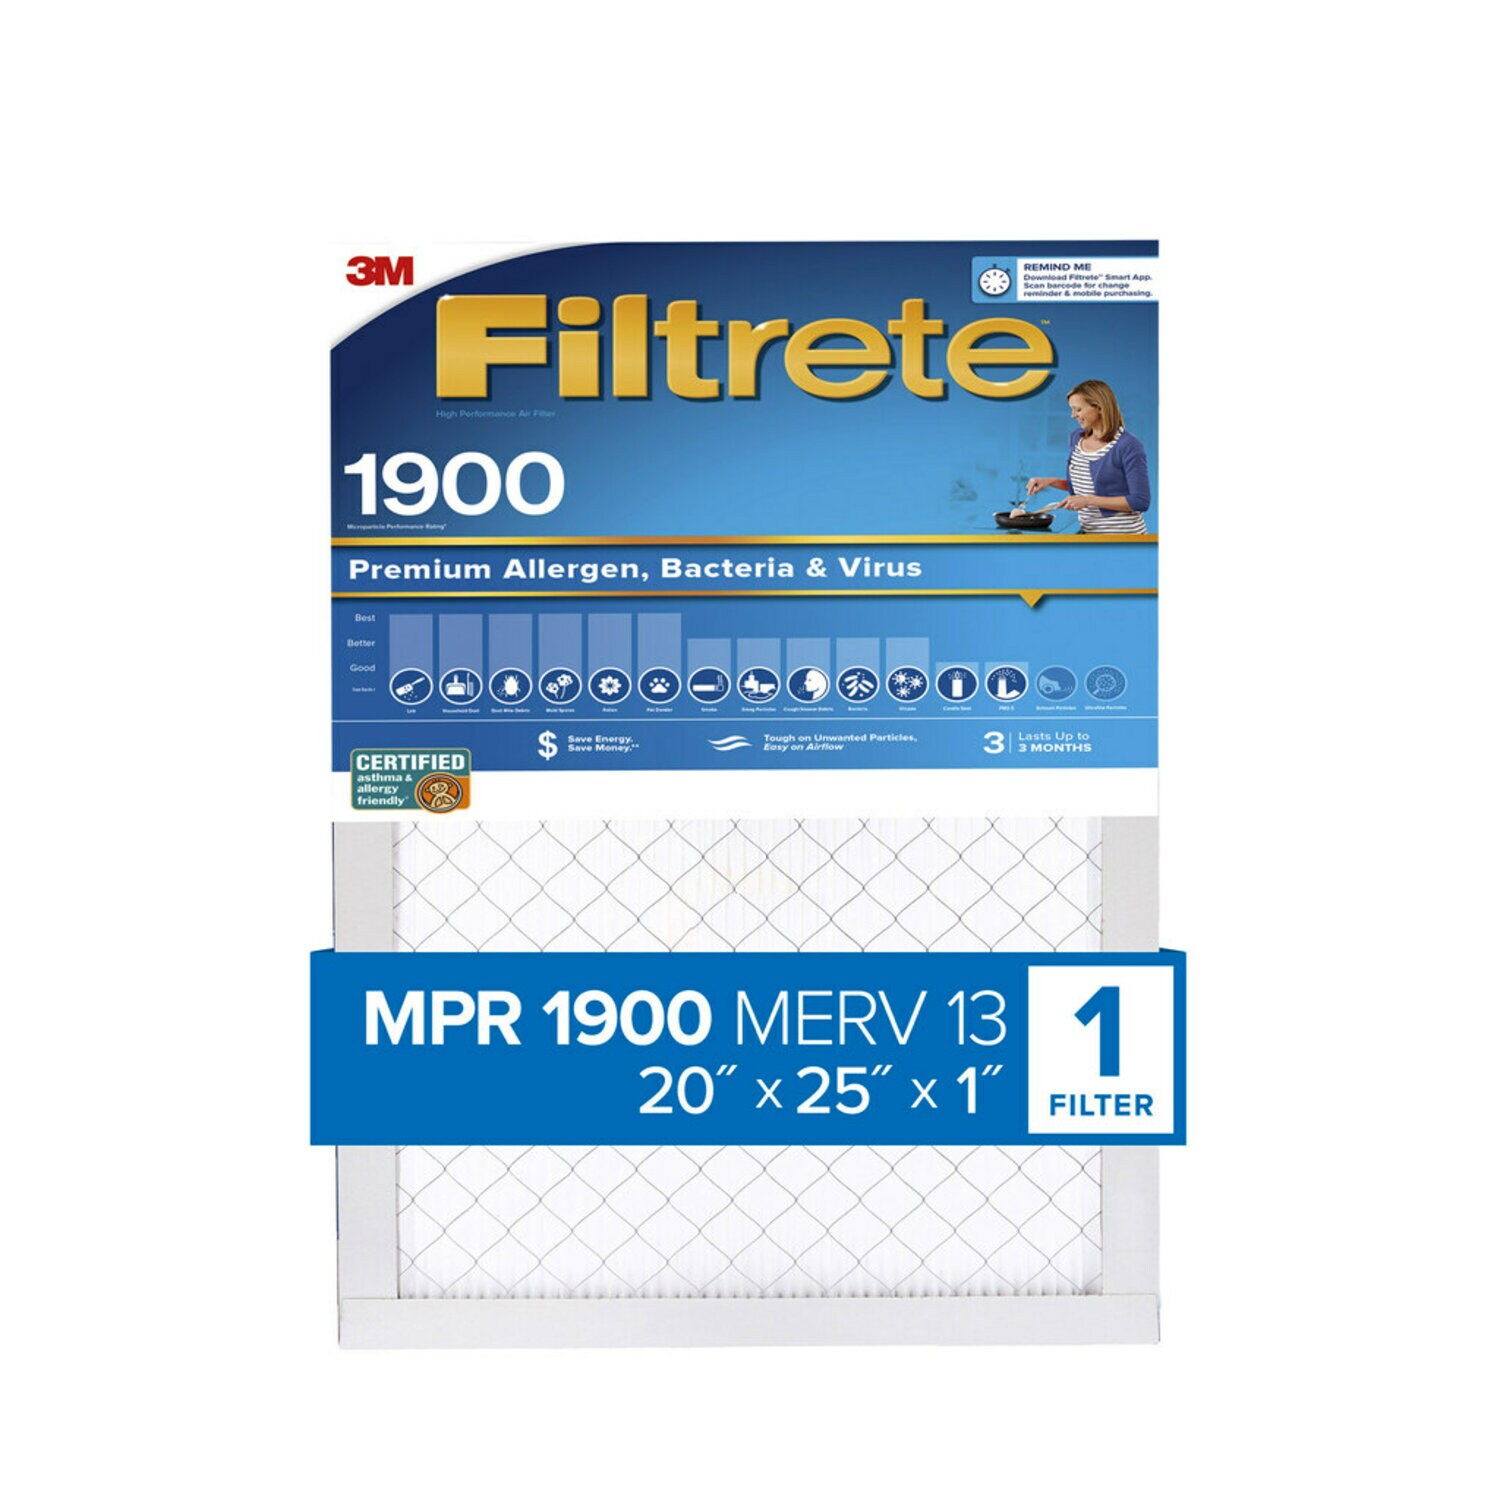 7100222948 - Filtrete High Performance Air Filter 1900 MPR UA03-4, 20 in x 25 in x 1 in (50.8 cm x 63.5 cm x 2.5 cm)